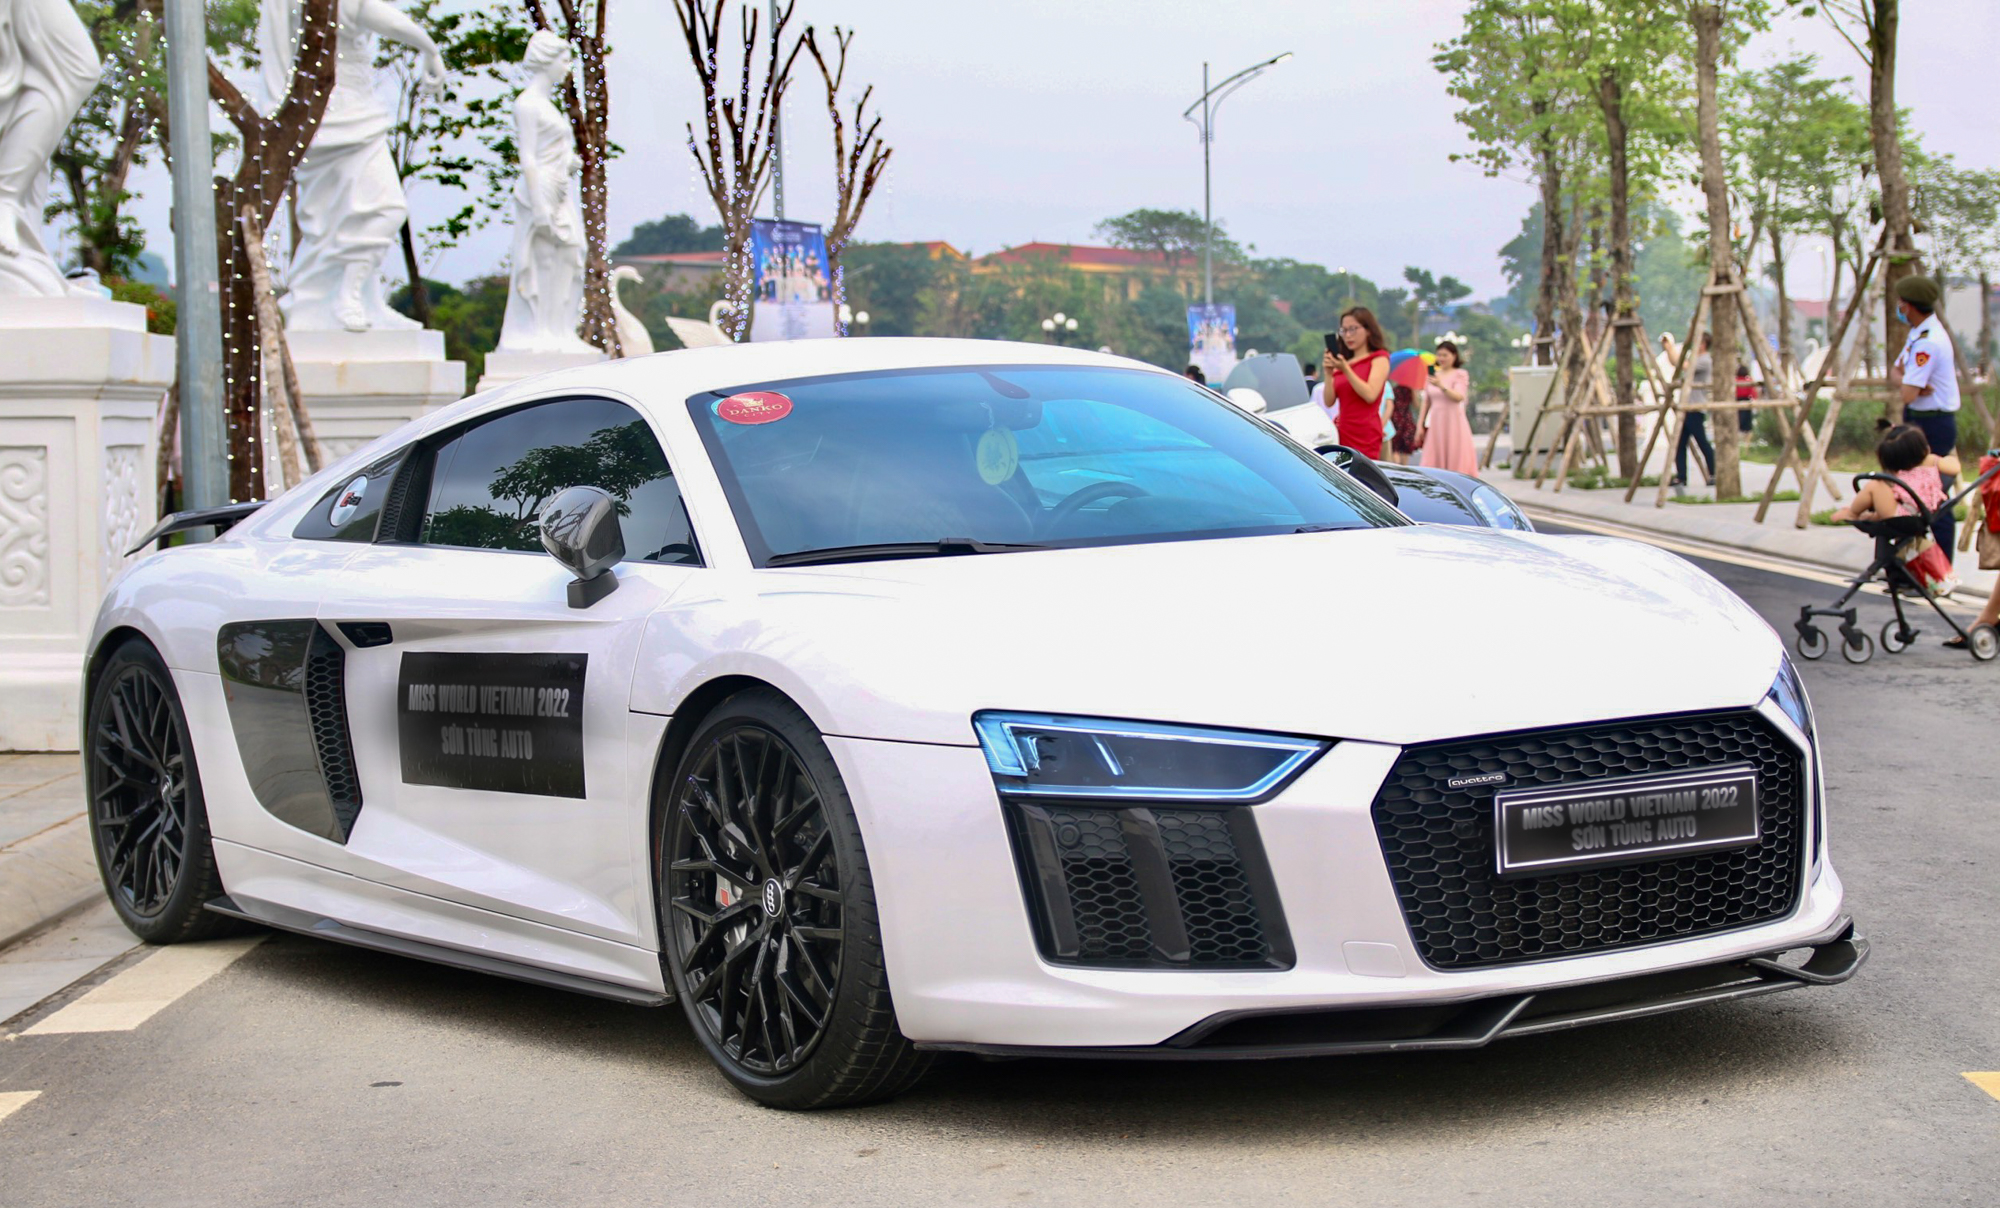 Xe chủ tịch giá 70 tỷ đọ dáng cùng dàn siêu xe tại Thái Nguyên - Ảnh 6.